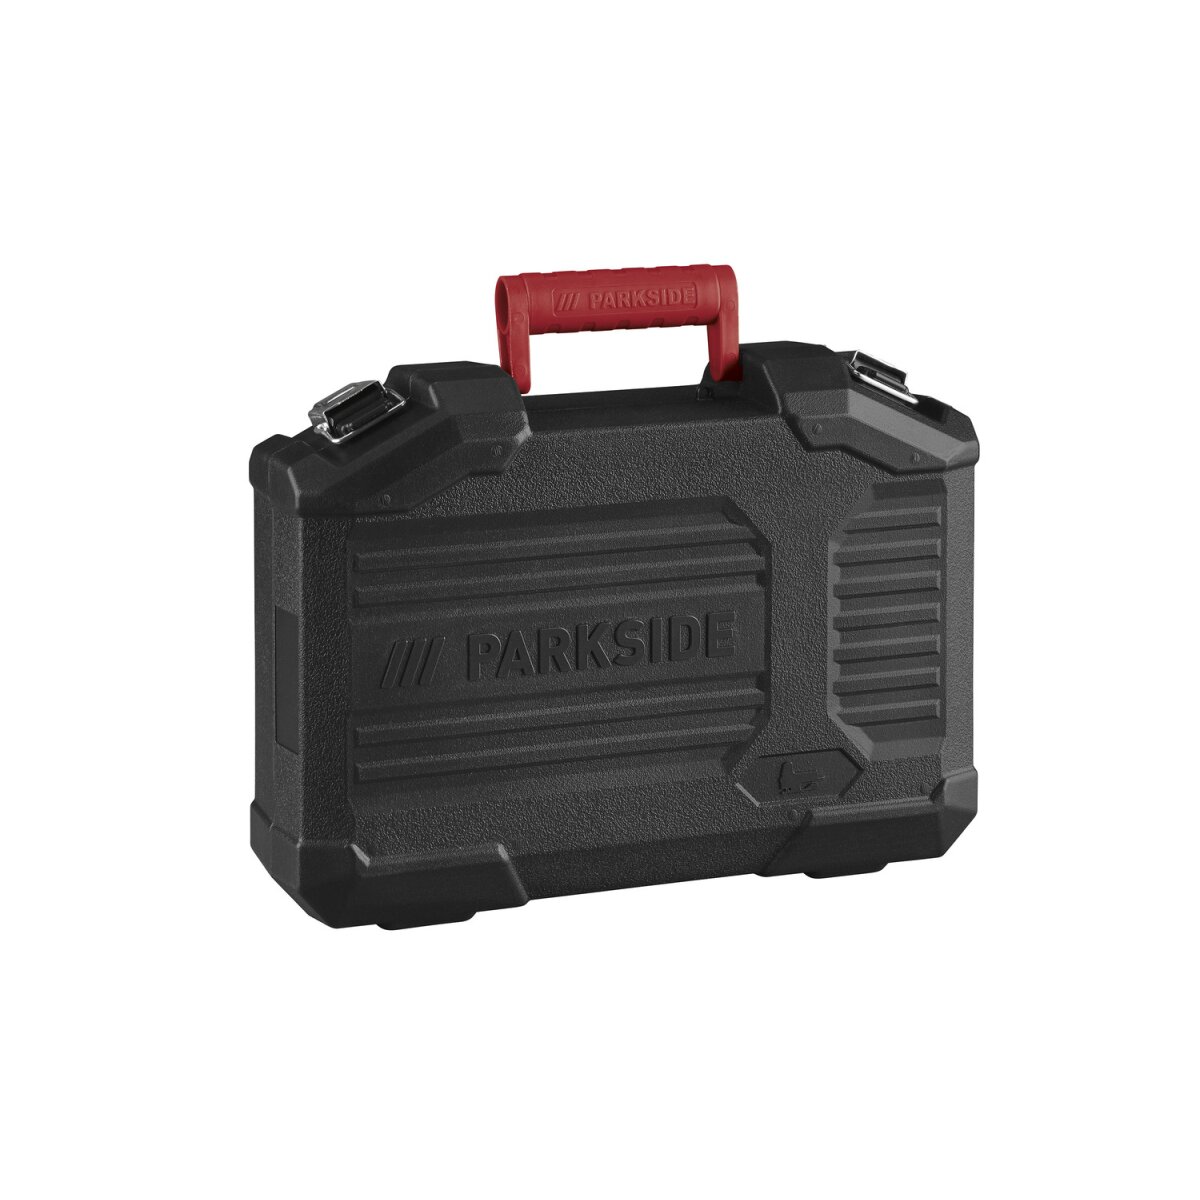 PARKSIDE® Pendelhubstichsäge »PSTK 800 E3«, mit Laserführung - B-Ware  neuwertig, 32,99 €